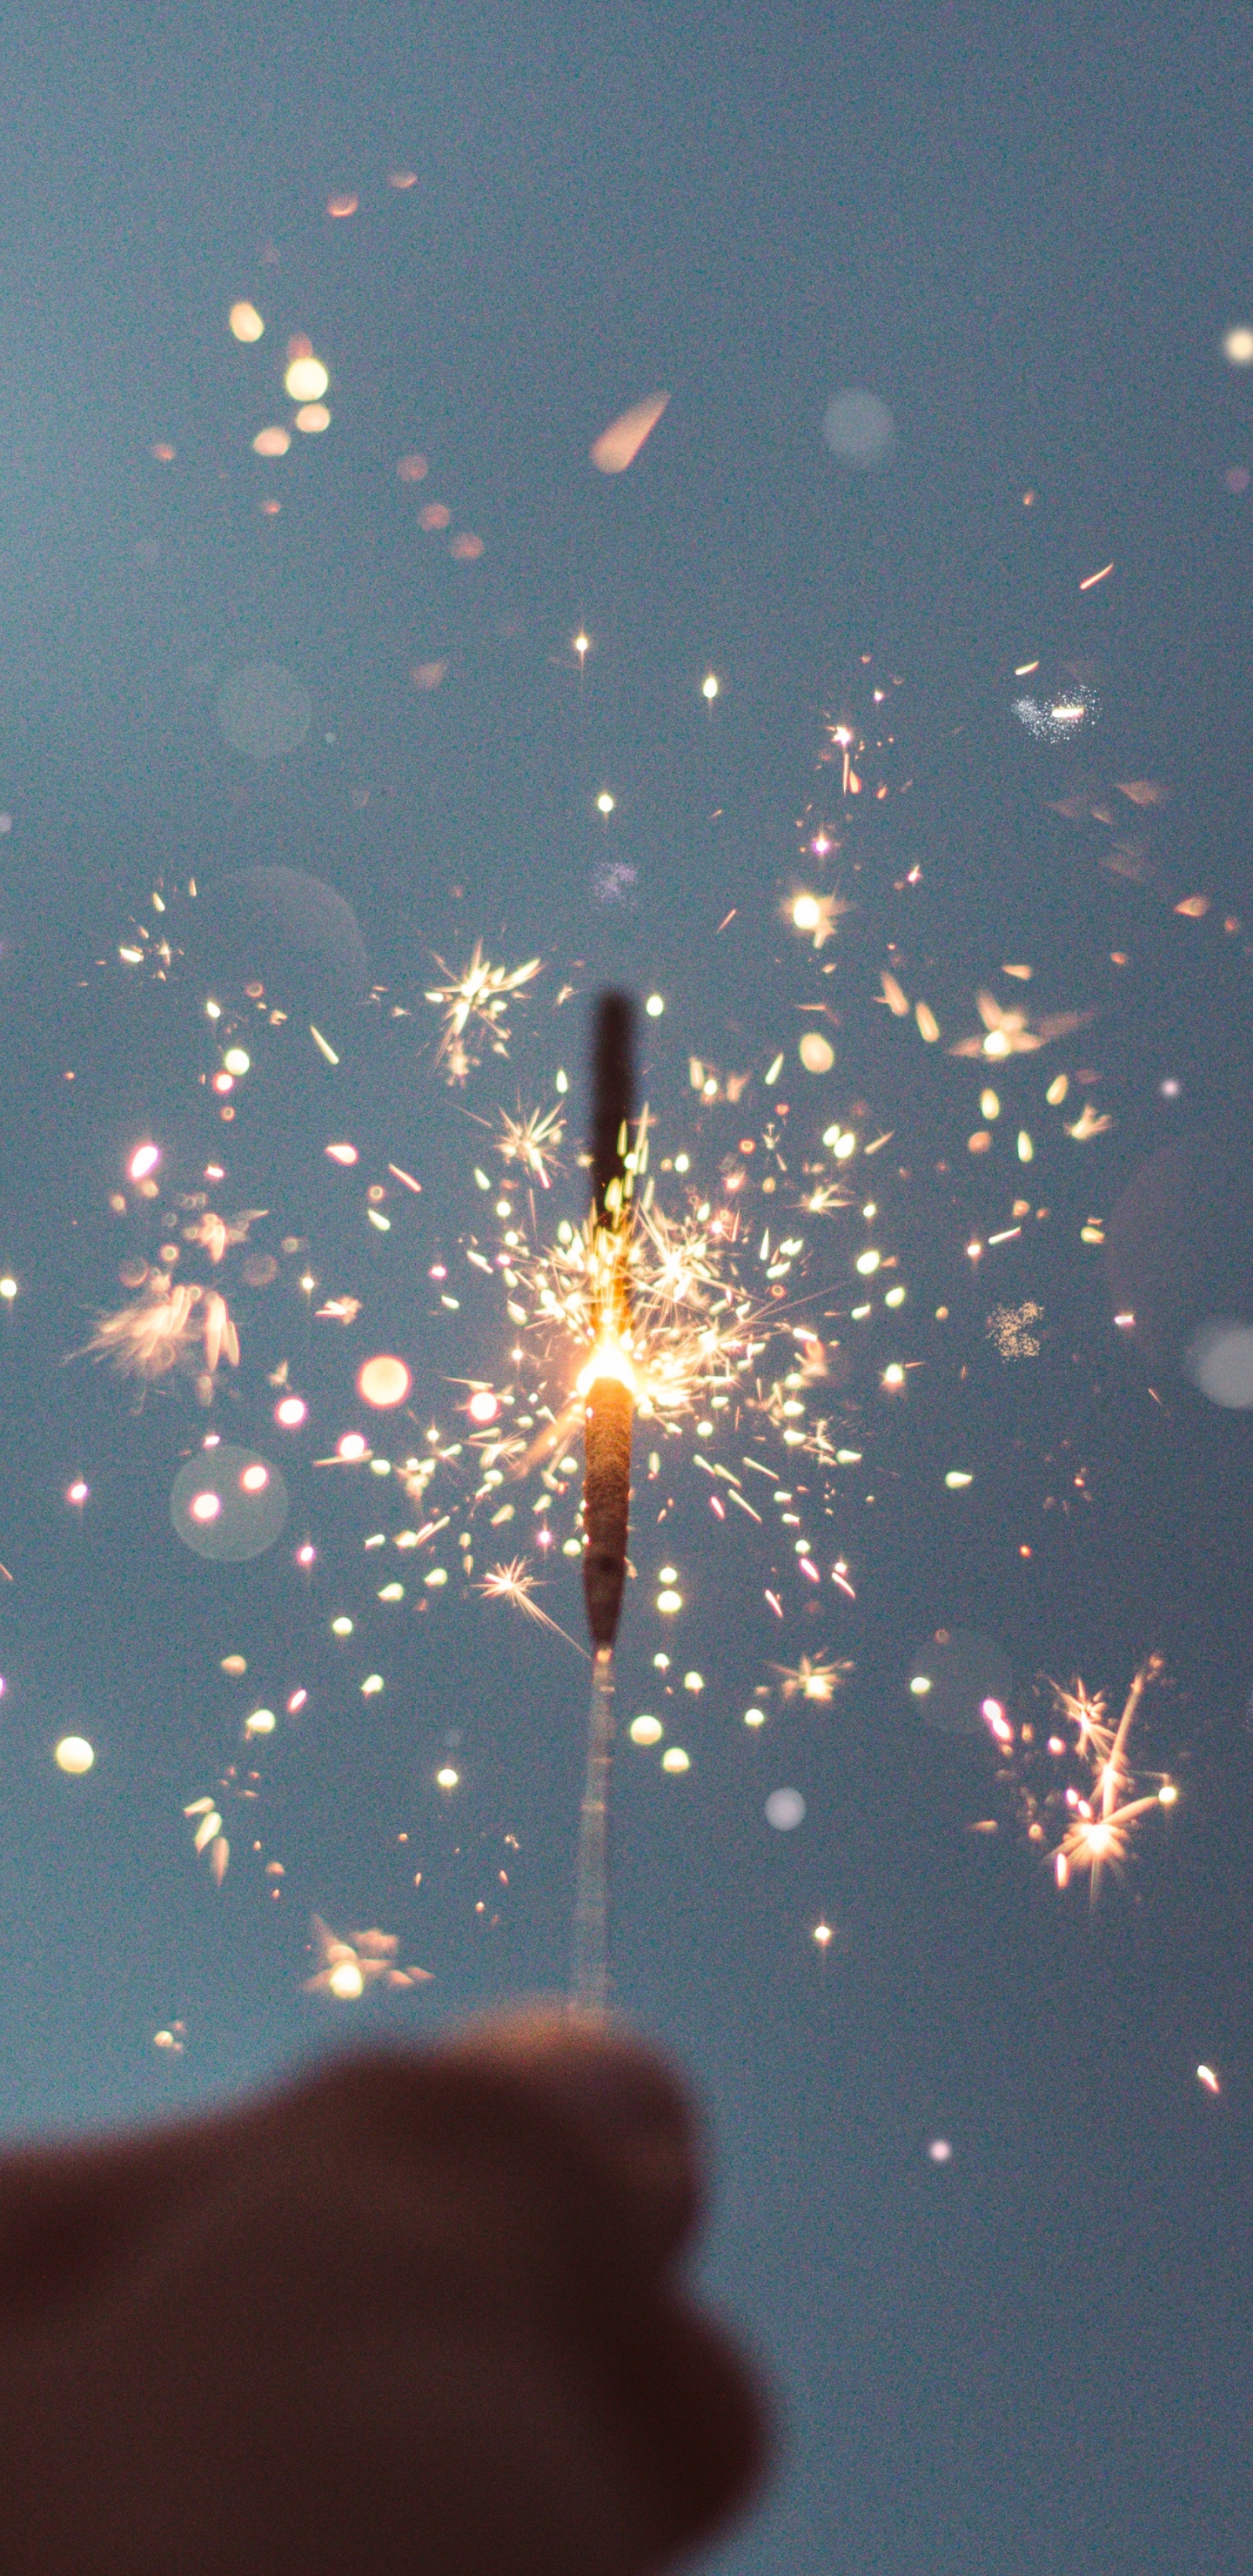 Neujahr, Wasser, Wunderkerze, Feuerwerk, Hand. Wallpaper in 1440x2960 Resolution